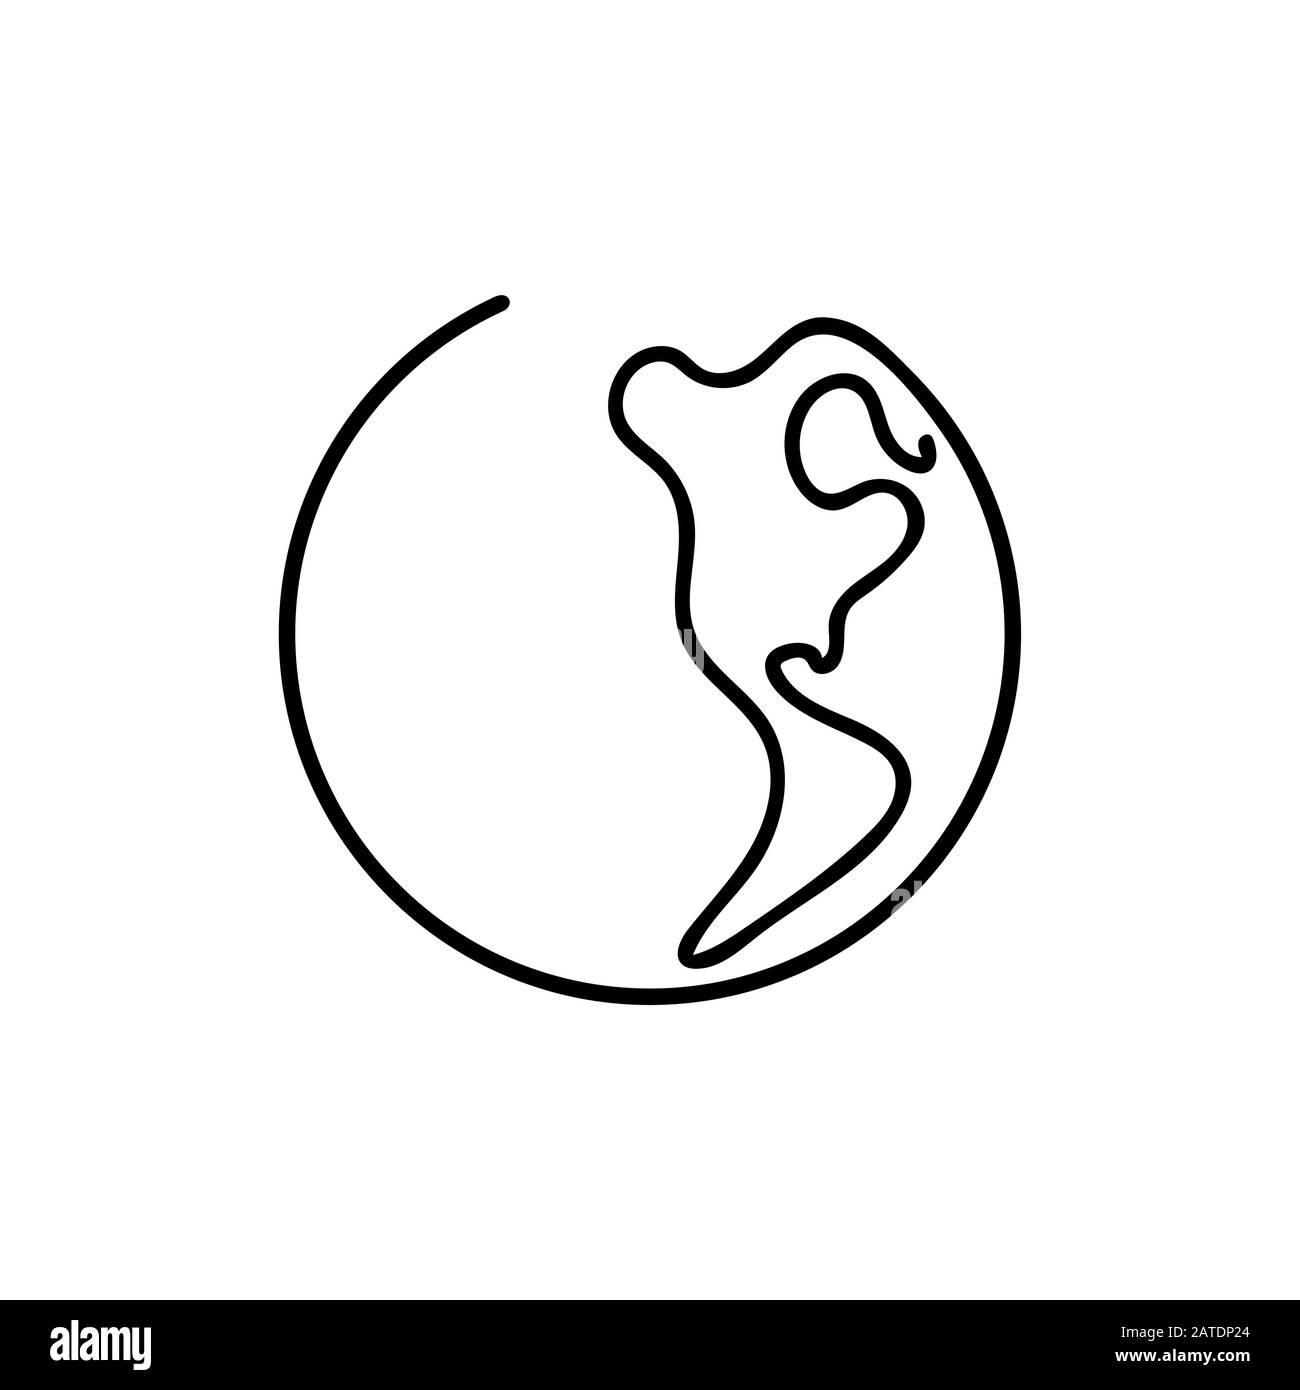 Kunst der Linie "Planet Erde" - Eine Welt im Stil Einer Linie. Einfaches, modernes, minimalistisches Vektordesign für Poster, Flyer, T-Shirts, Karten, Einladungen, Aufkleber Stock Vektor